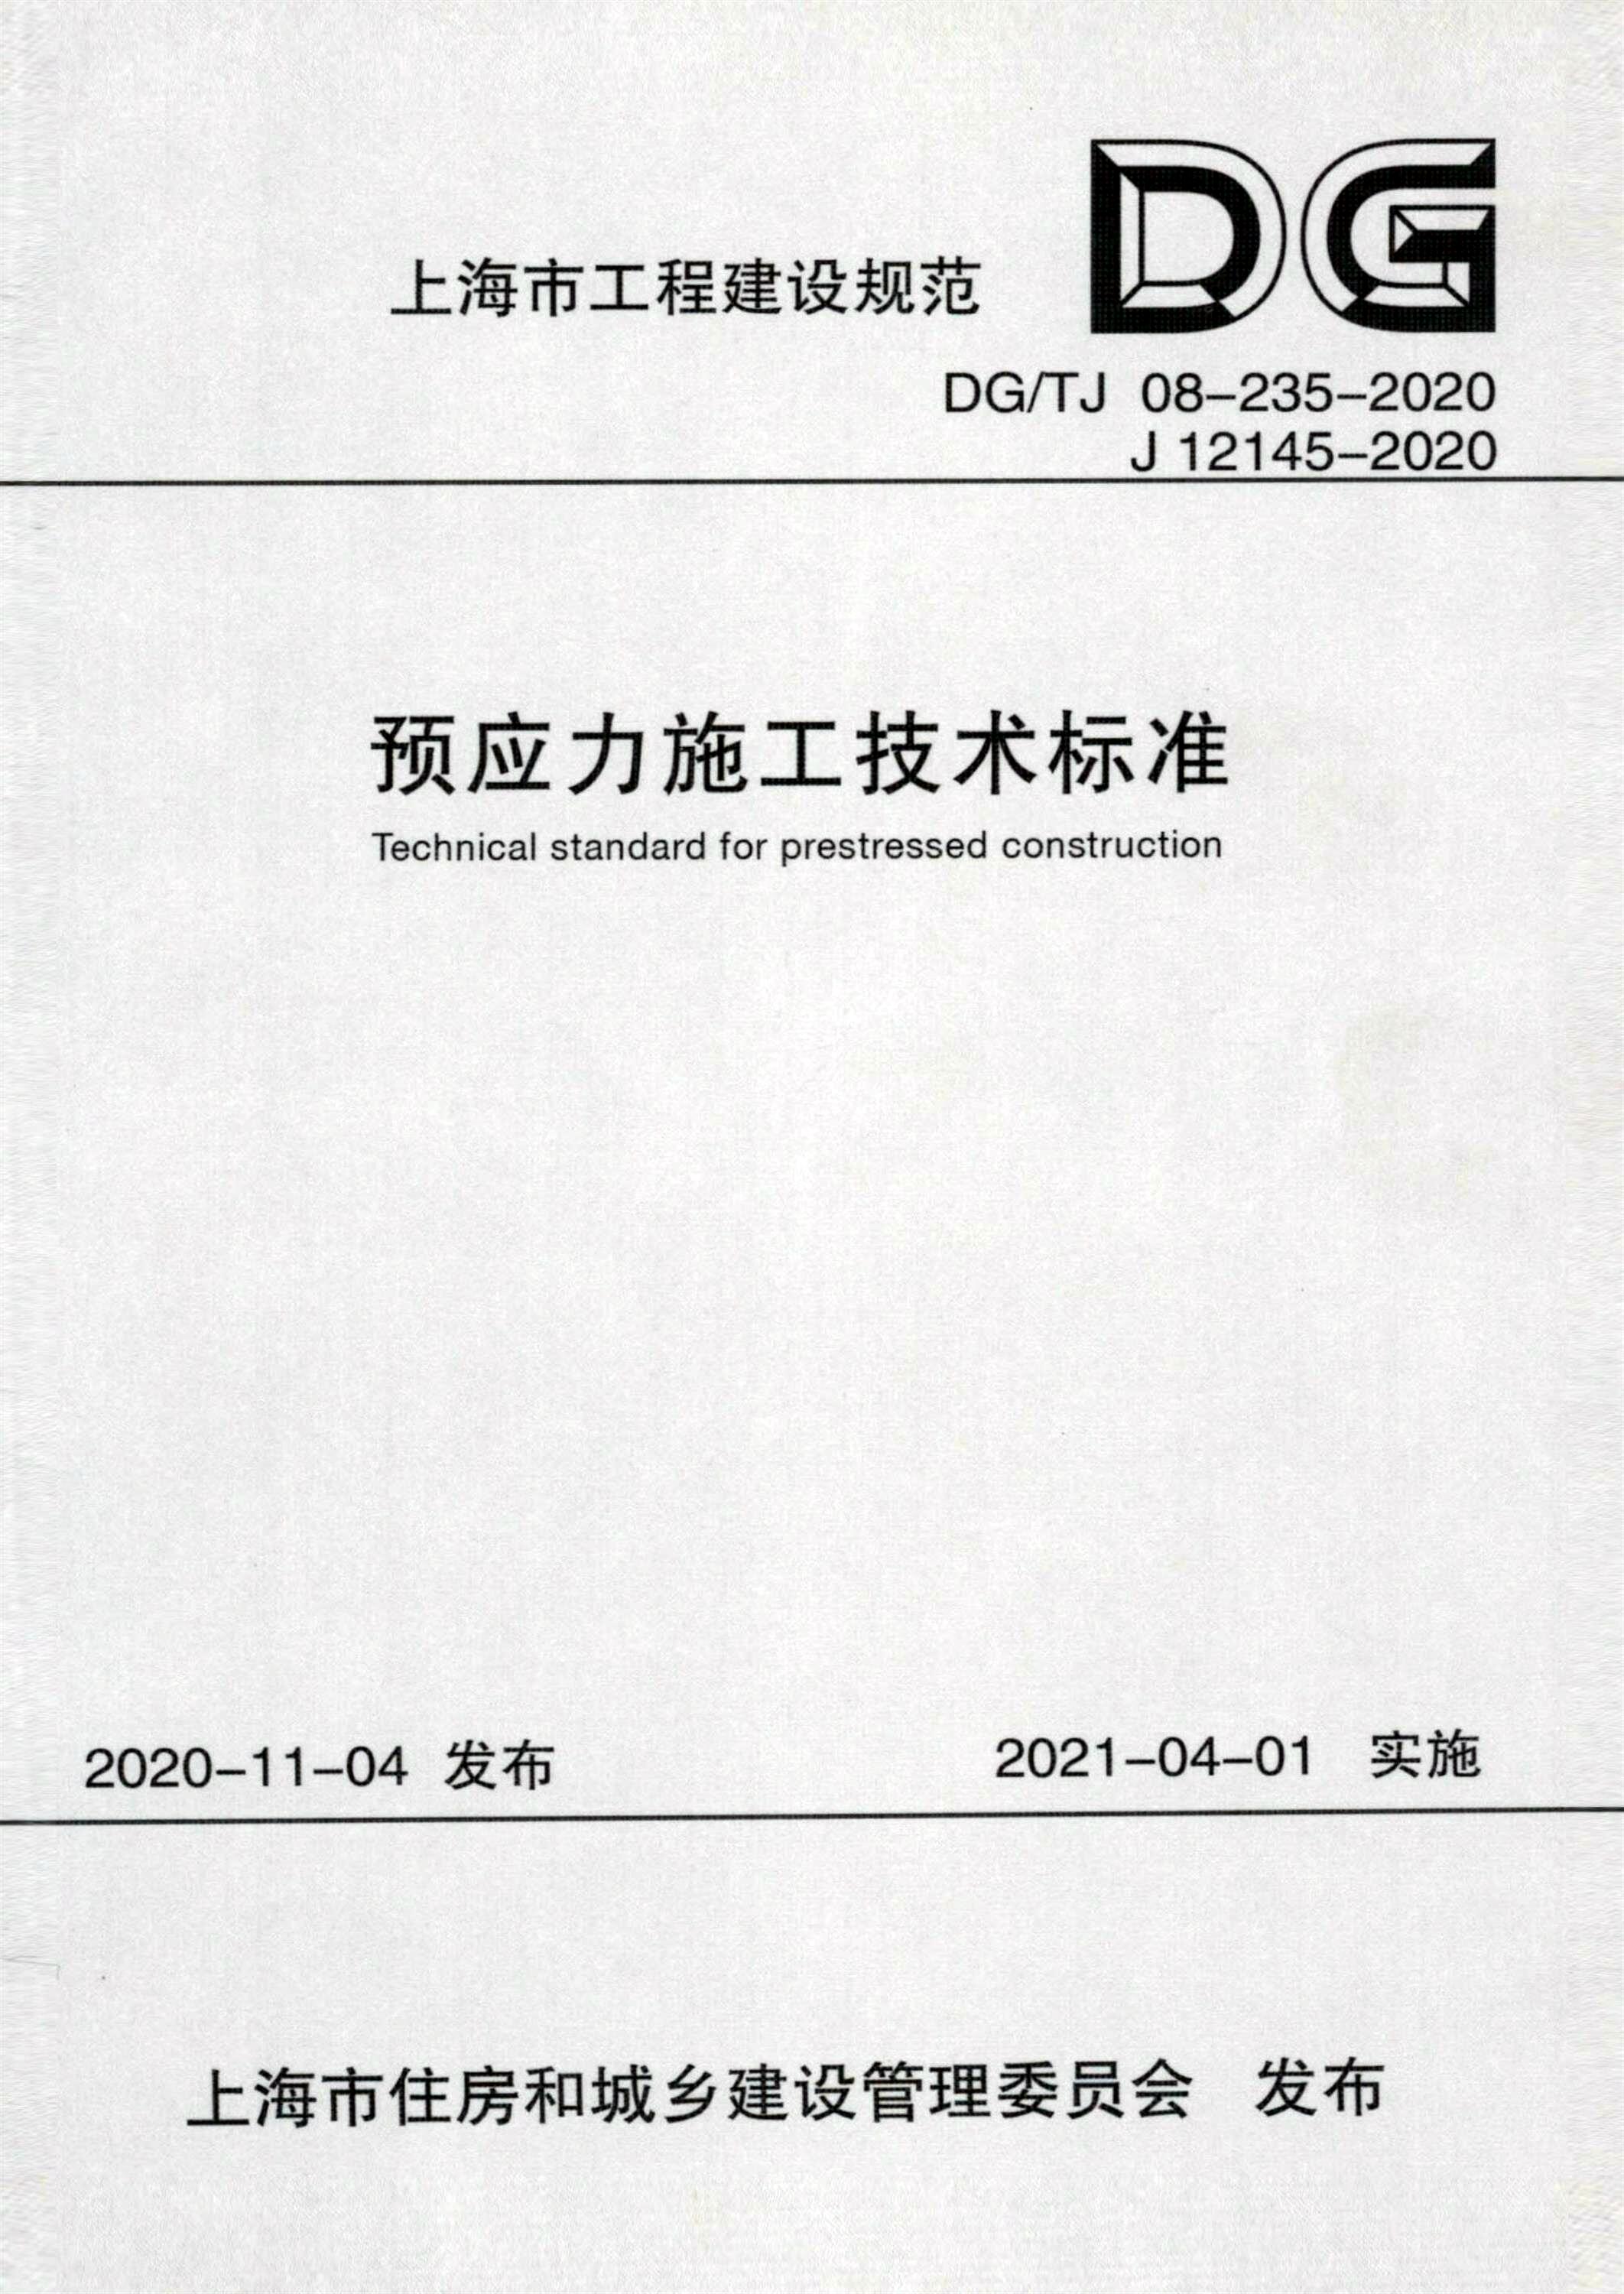 预应力施工技术标准DGTJ 08-235-2020 （参编）_副本.jpg